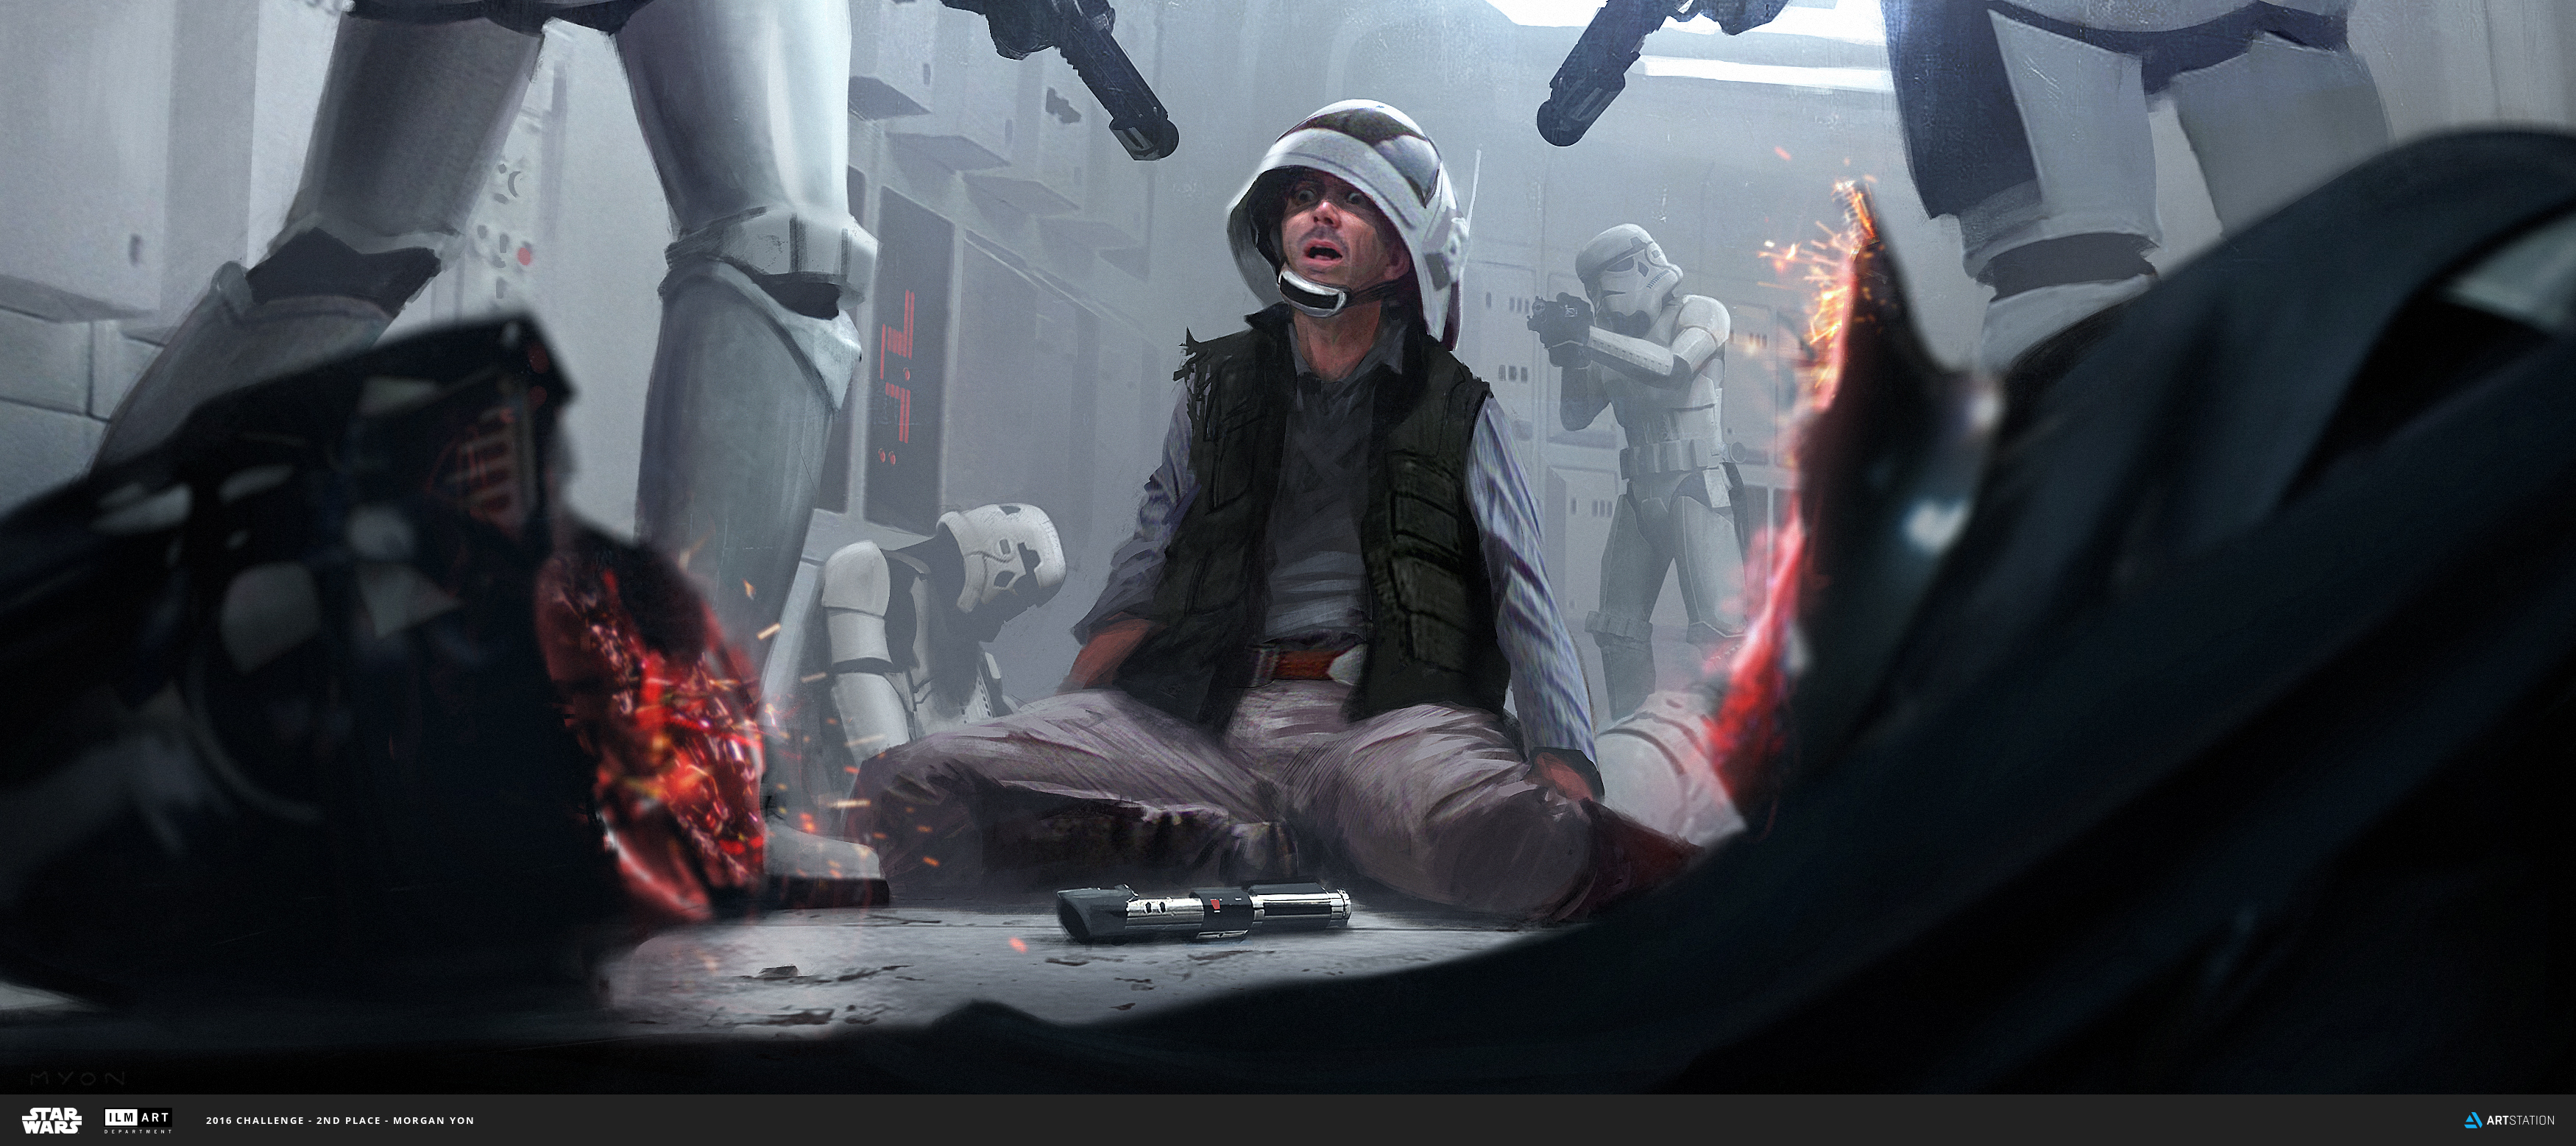 fondo de pantalla de fan art de star wars,captura de pantalla,personaje de ficción,juegos,juego de pc,cabello negro